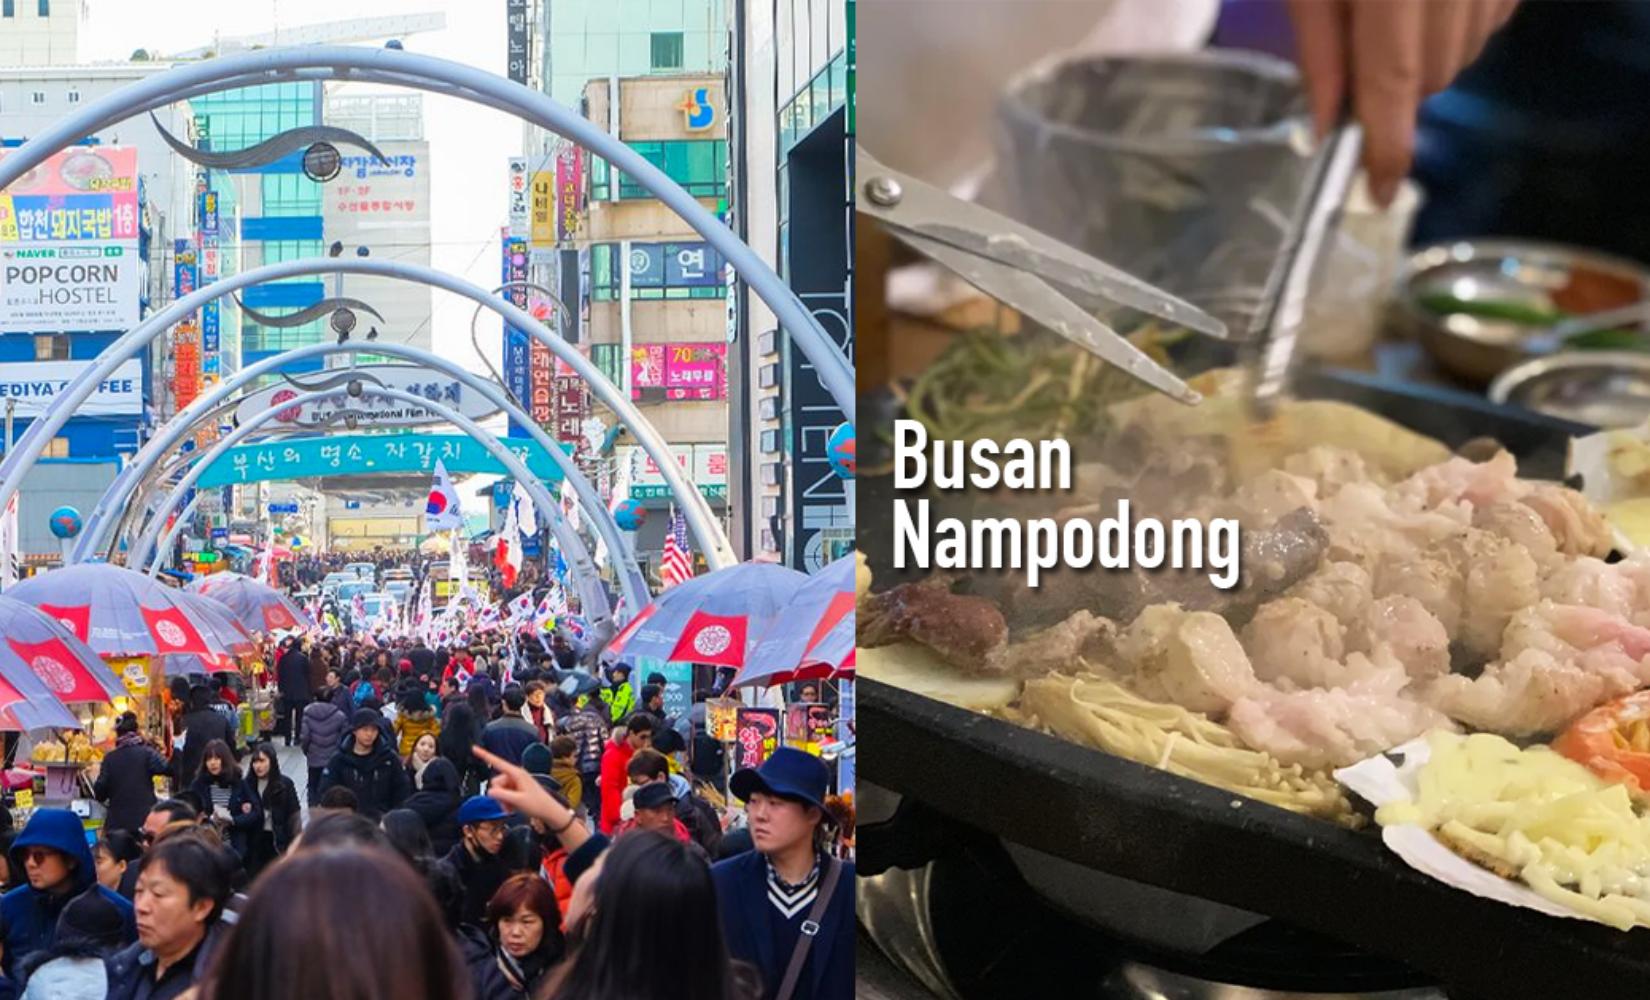 Tổng hợp các quán ăn ngon nổi tiếng ở Nampodong, Busan